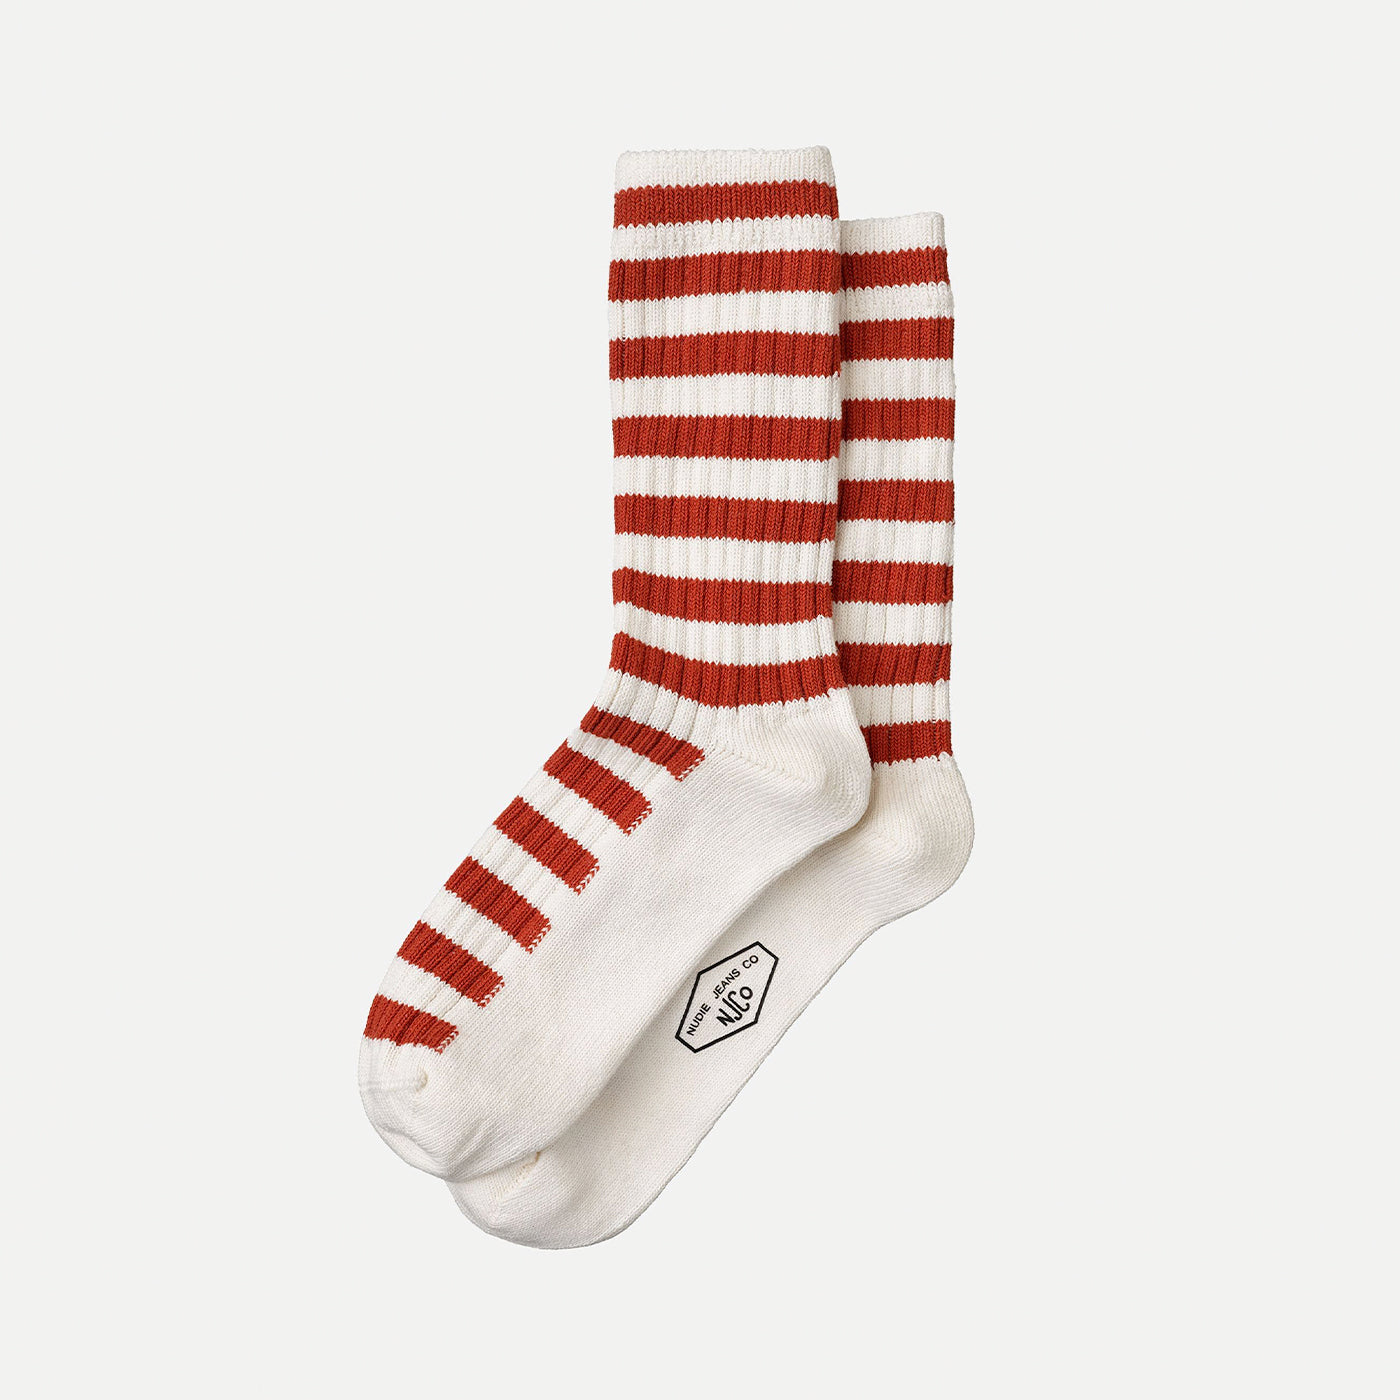 Nudie - Mens Chunky Stripe Socks - Rebirth Red